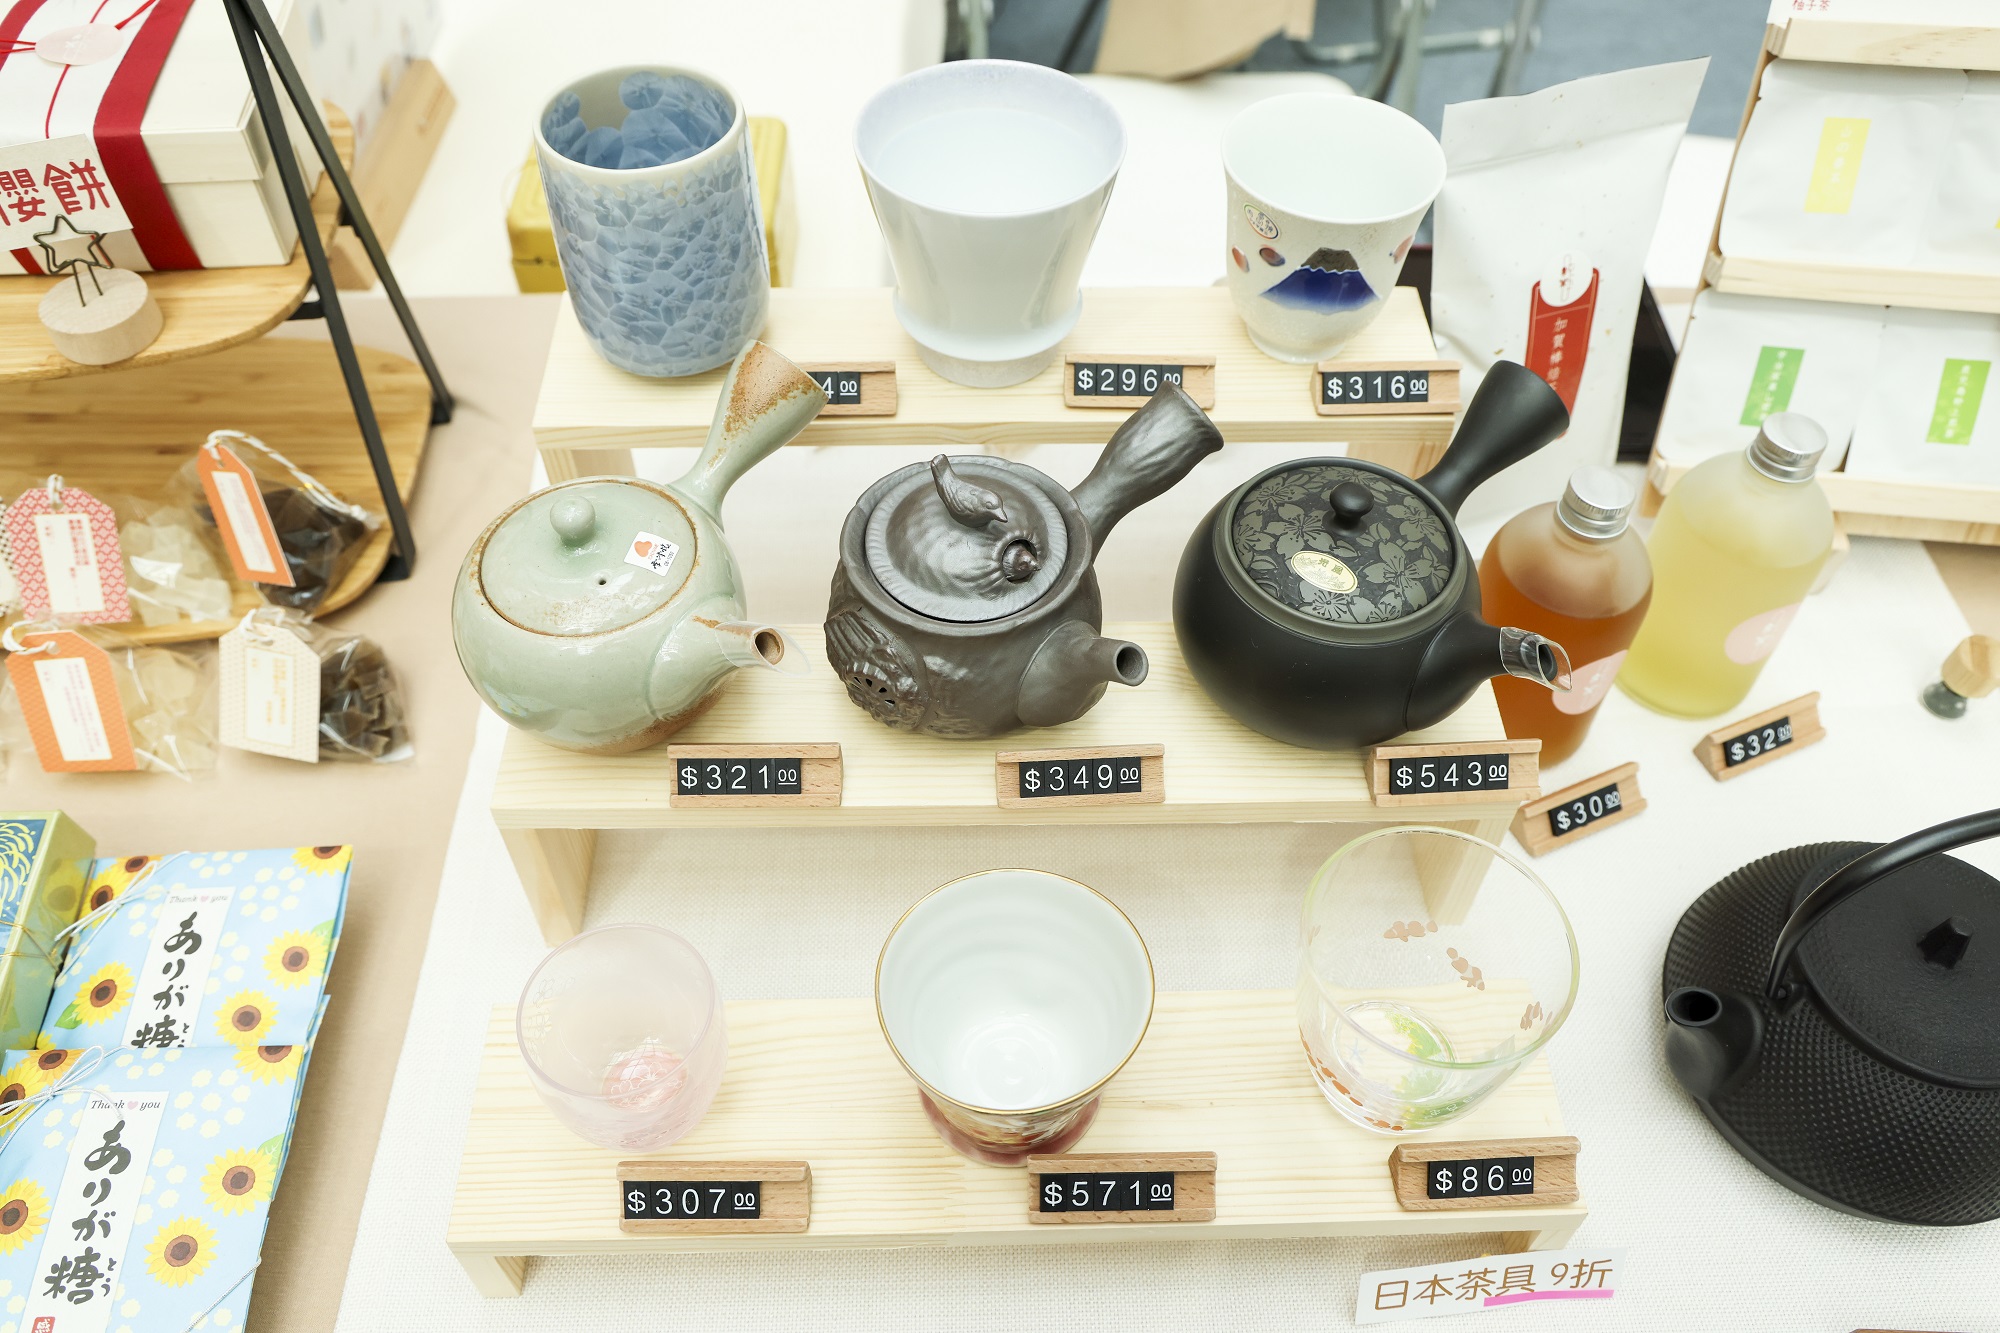 純粋 JUNSUI主打品質極高的茶具及茶包組合.jpg